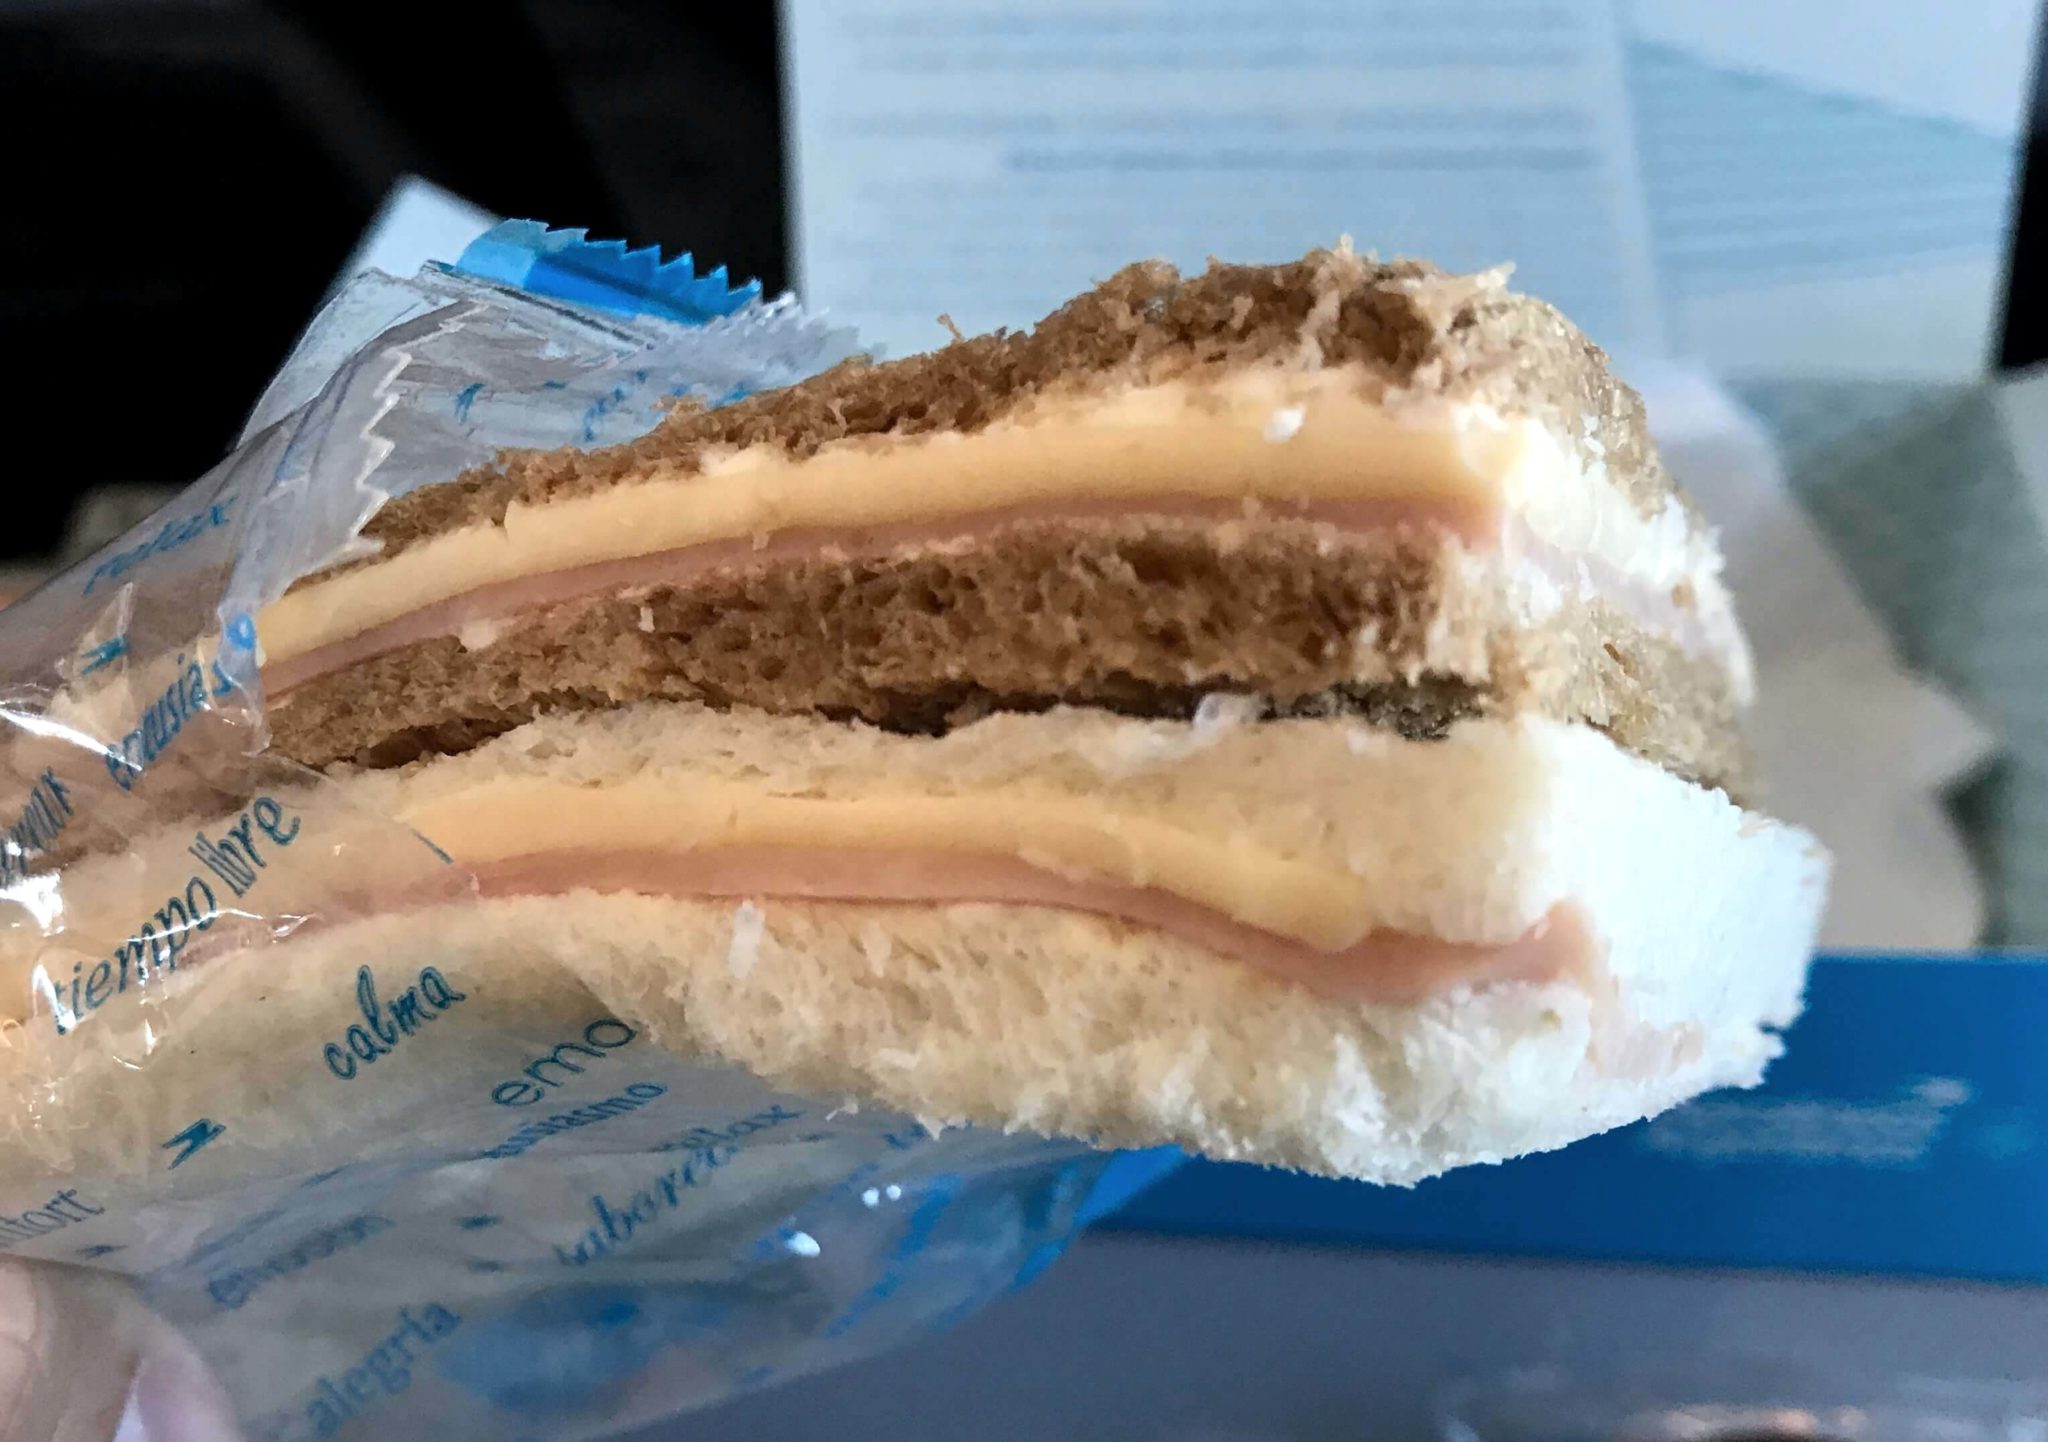 Sandwich de miga, nada más argentino